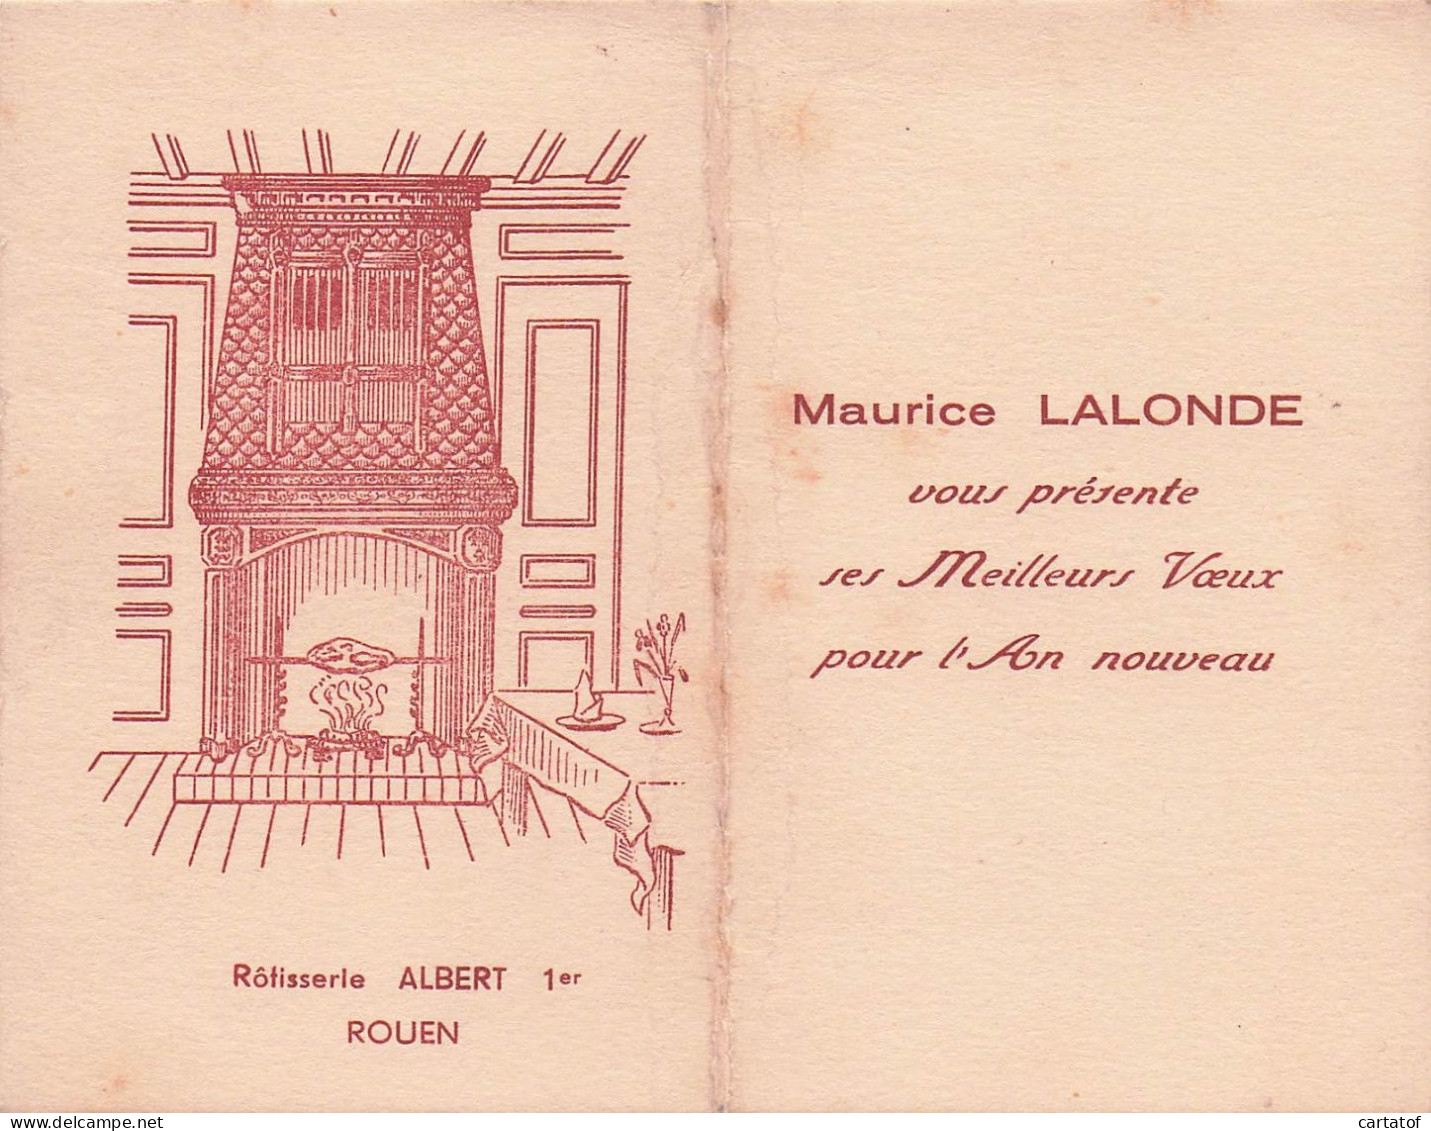 Rotisserie ALBERT 1er  ROUEN . Maurice LALONDE Présente Ses Meilleurs Vœux - Hotelsleutels (kaarten)